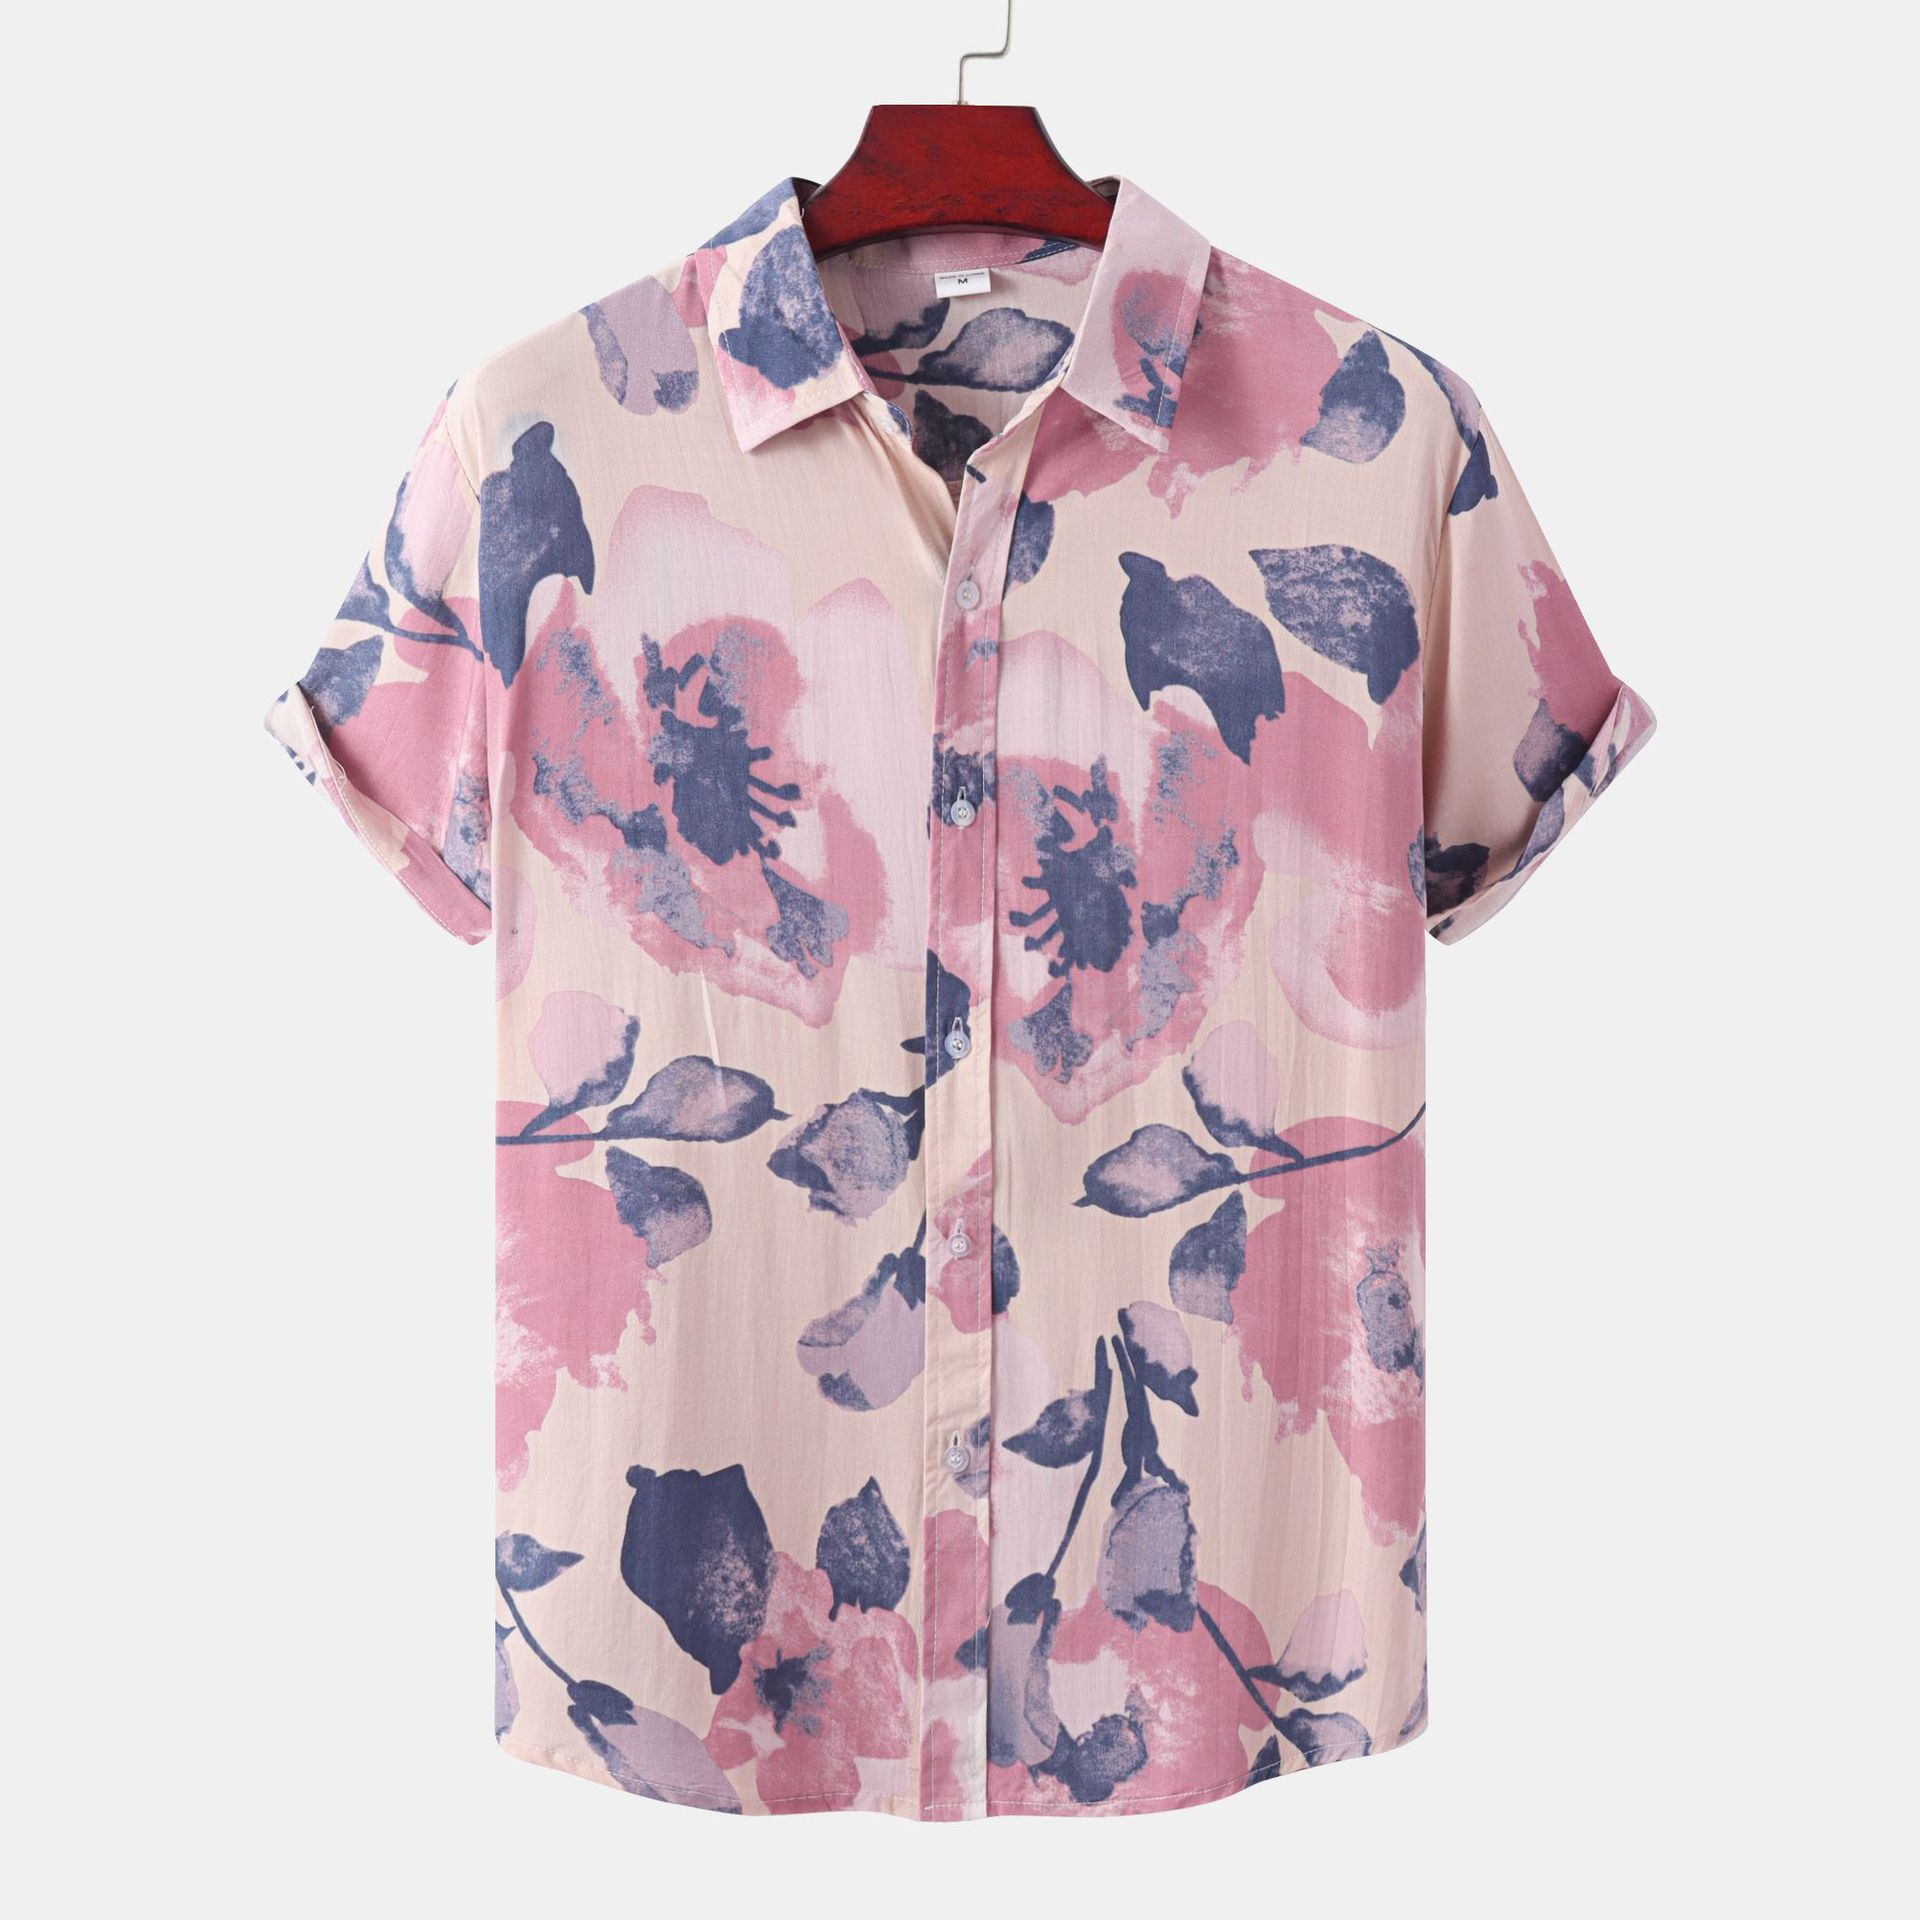 Men's Short-Sleeved Resort Style Shirt